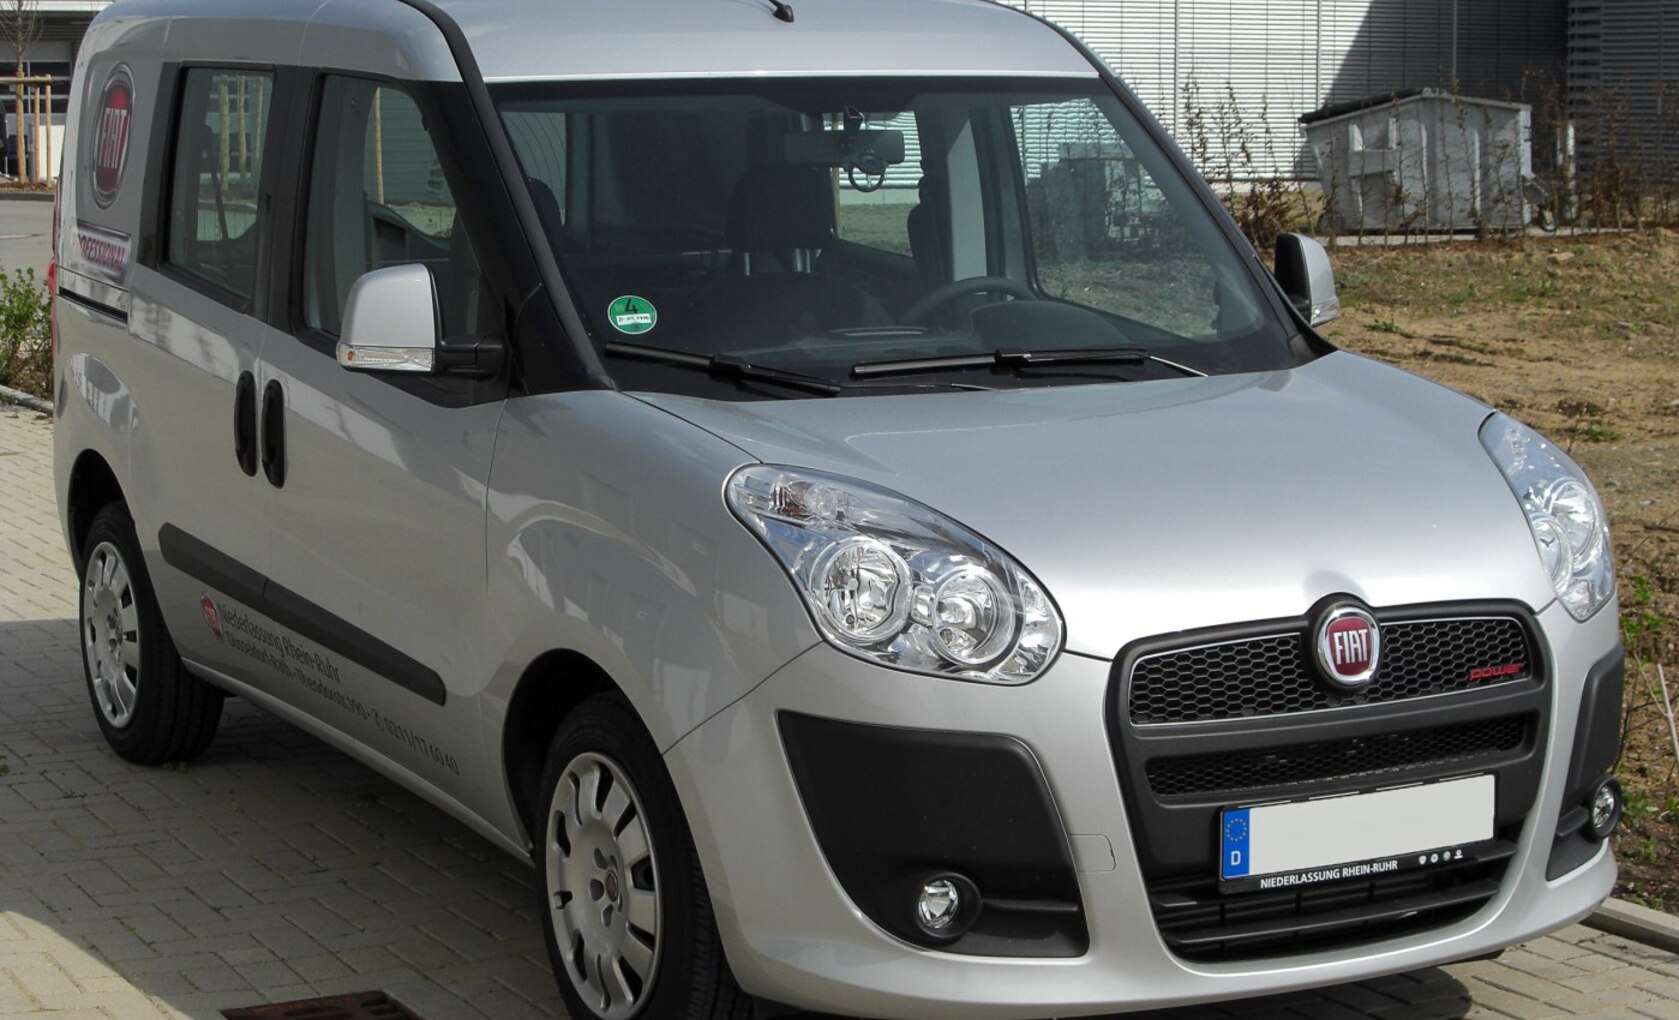 Fiat Doblo II 2.0 (135 Hp) 2009, 2010, 2011, 2012, 2013, 2014, 2015 